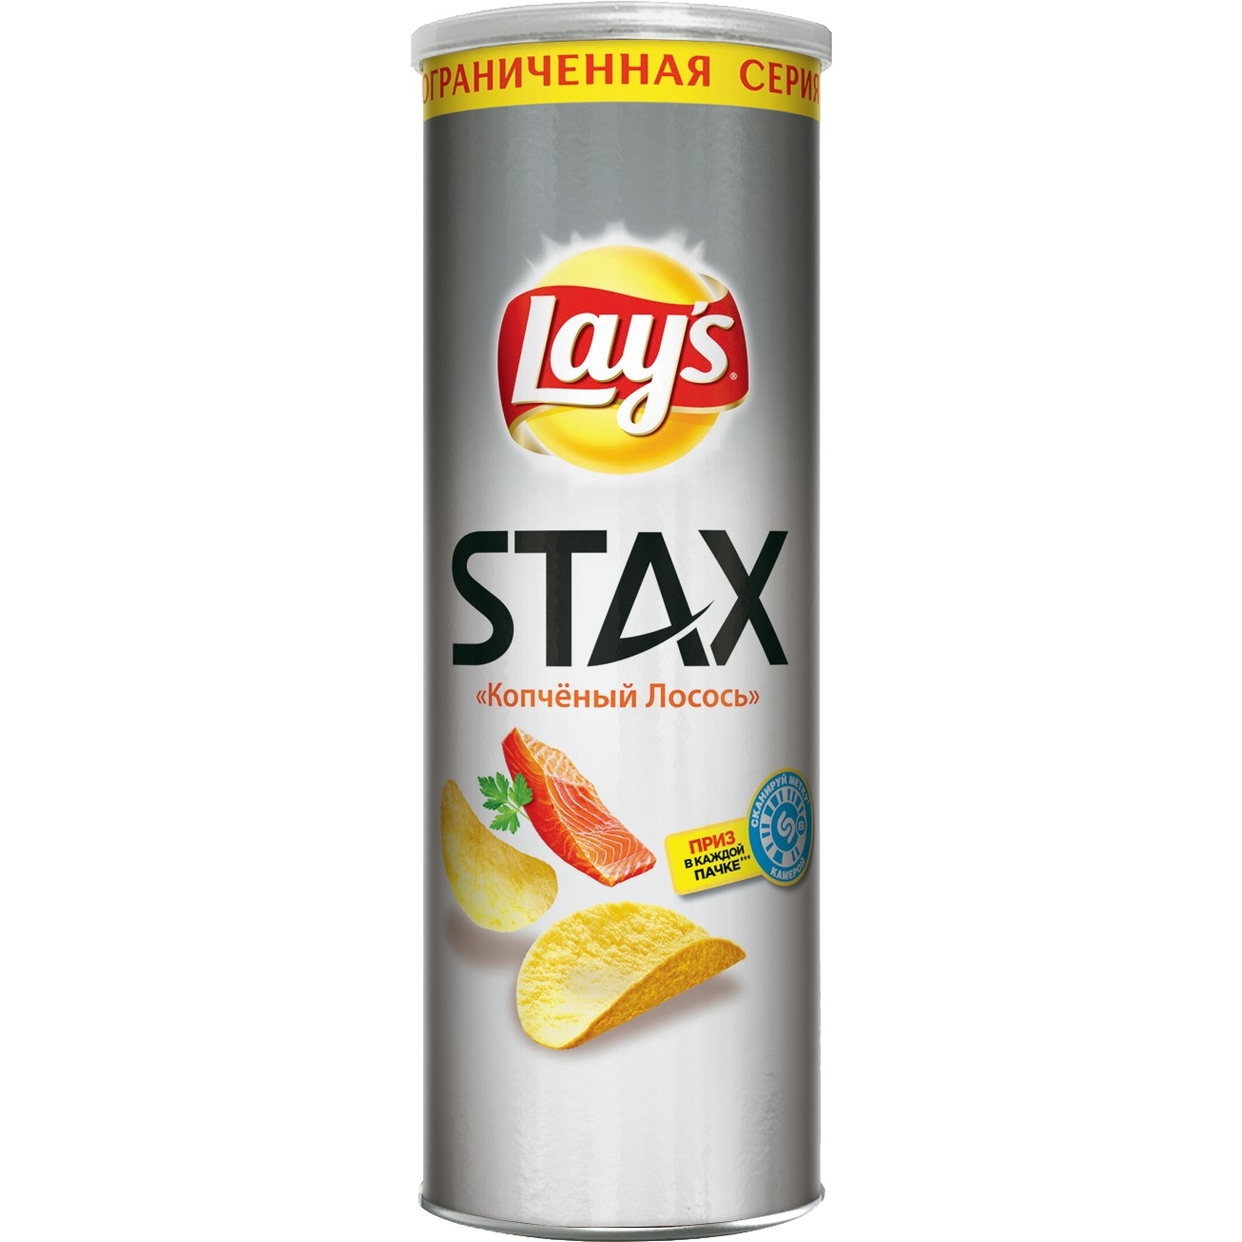 Картофельные чипсы Lay's Stax со вкусом "Копченый лосось", 165гр